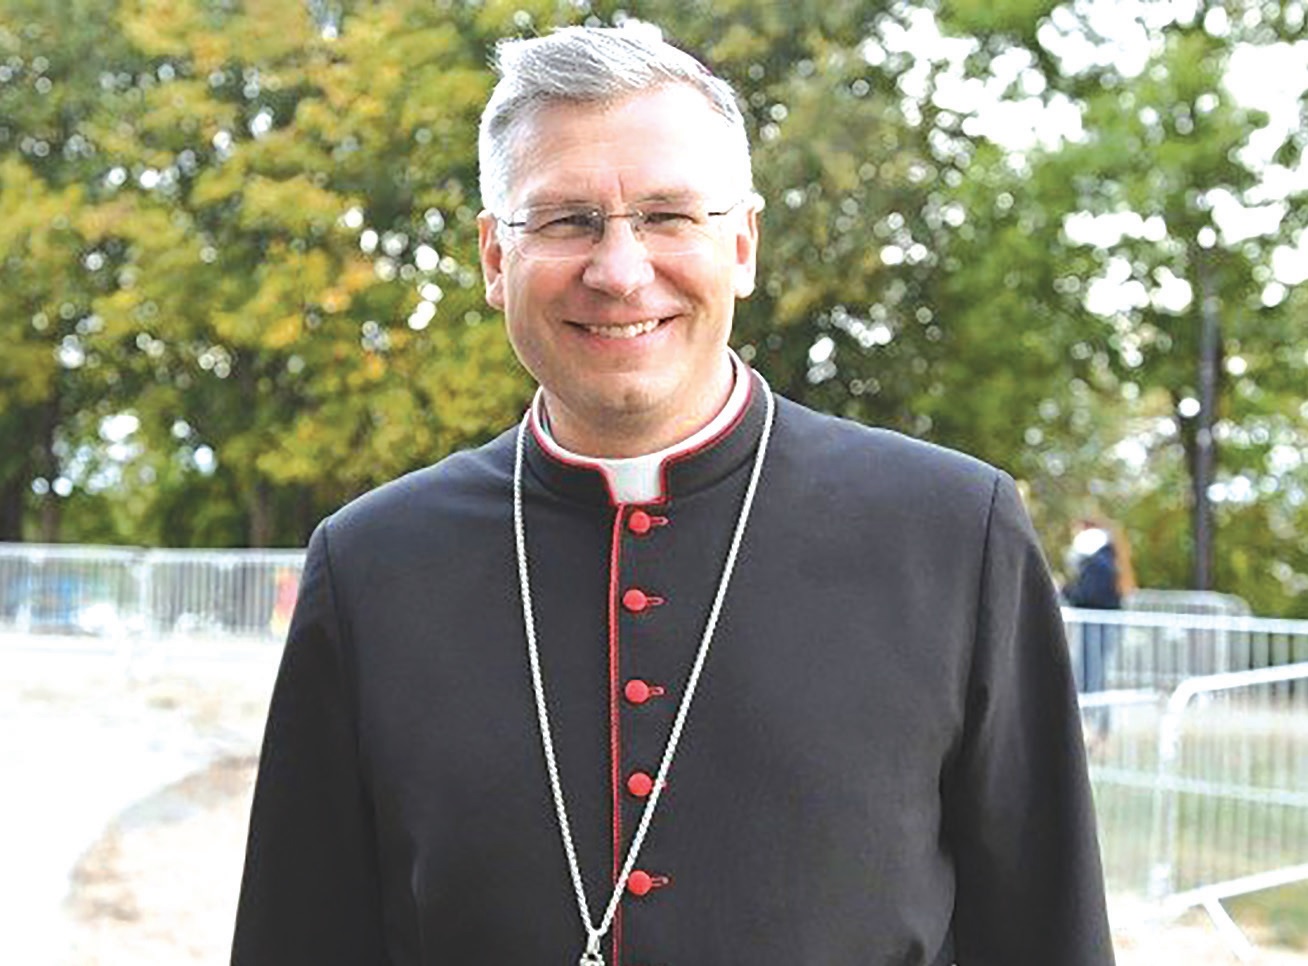 Kauno arkivyskupas Kęstutis Kėvalas palaiko viešoje erdvėje užpultus dvasininkus ir reiškia jiems paramą išplatindamas viešą kreipimąsi.